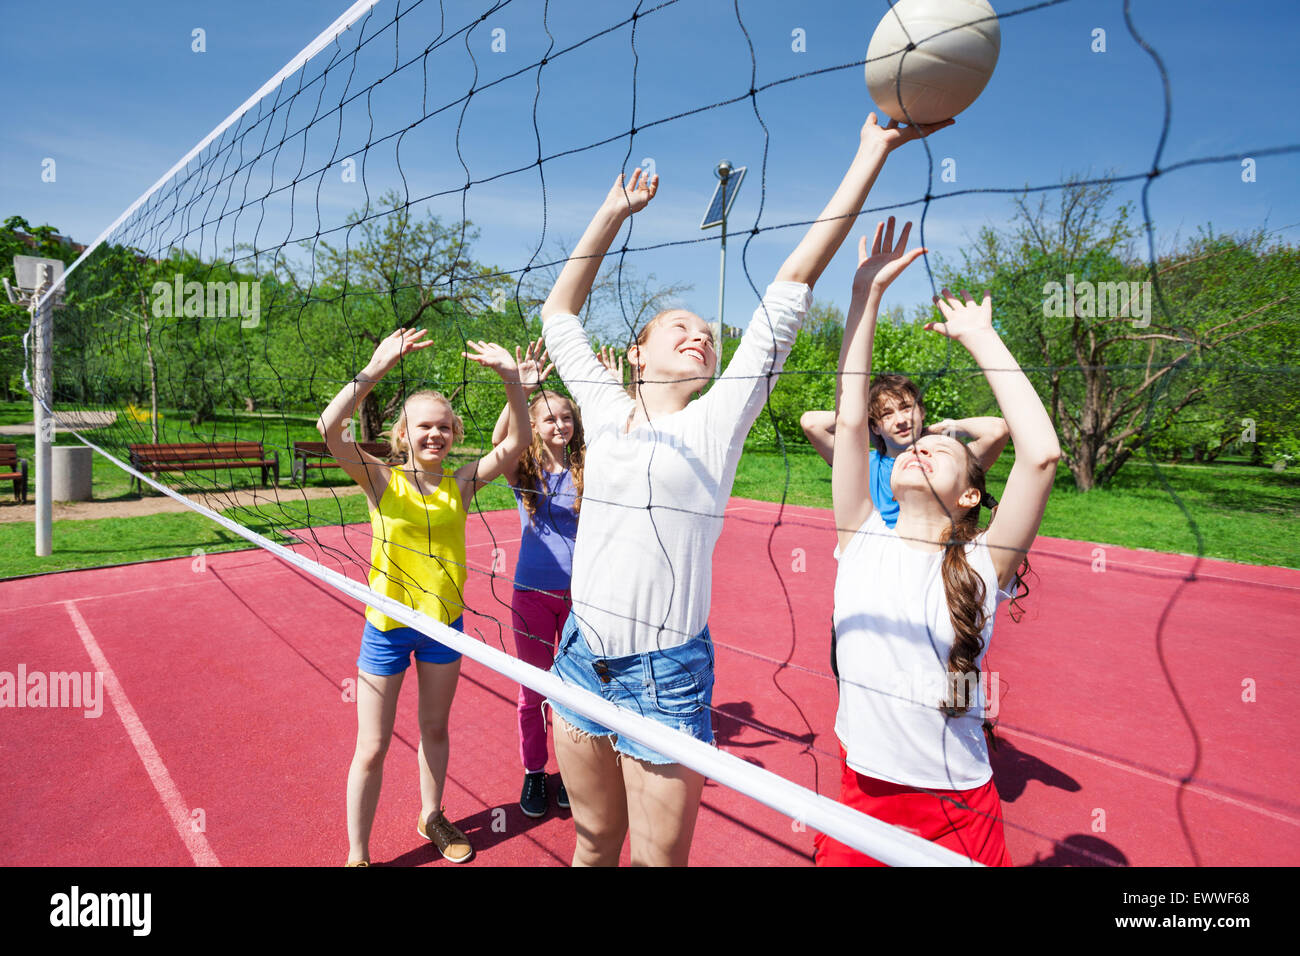 Les adolescents en mouvement avec les bras jouer au volley-ball Banque D'Images